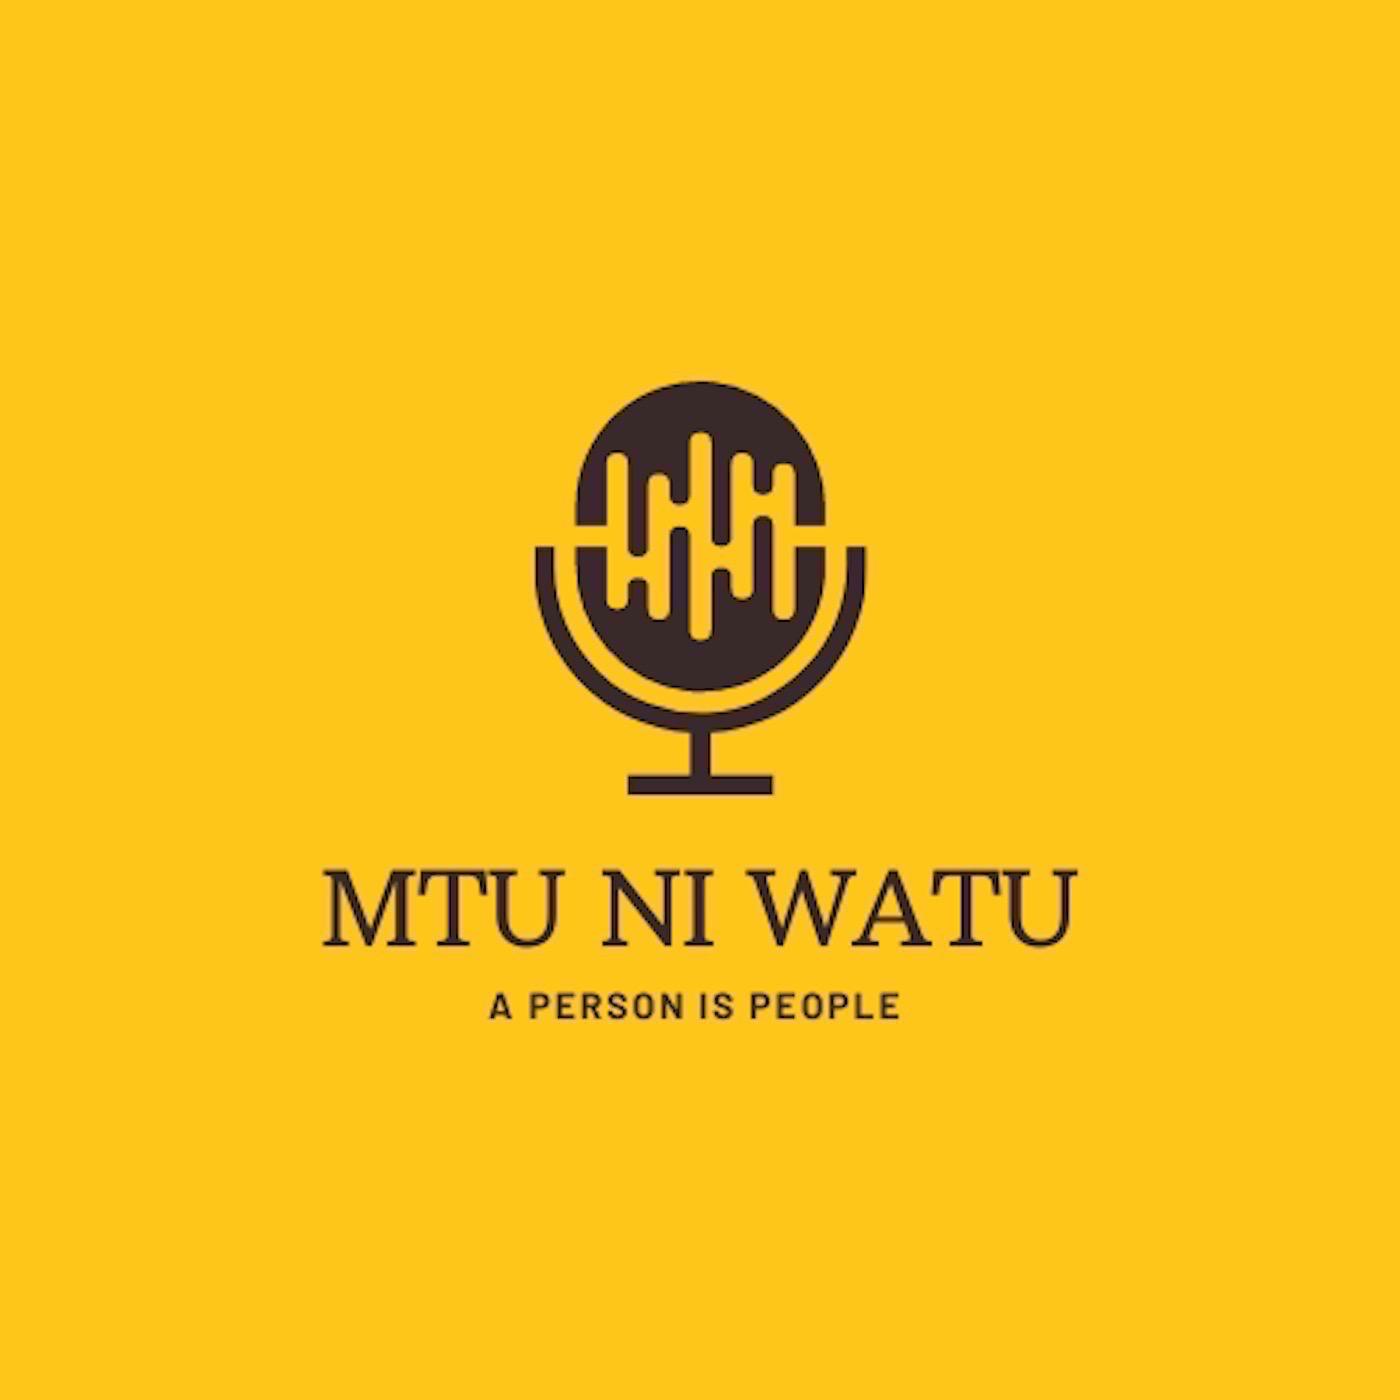 Mtu ni Watu - Podcast 